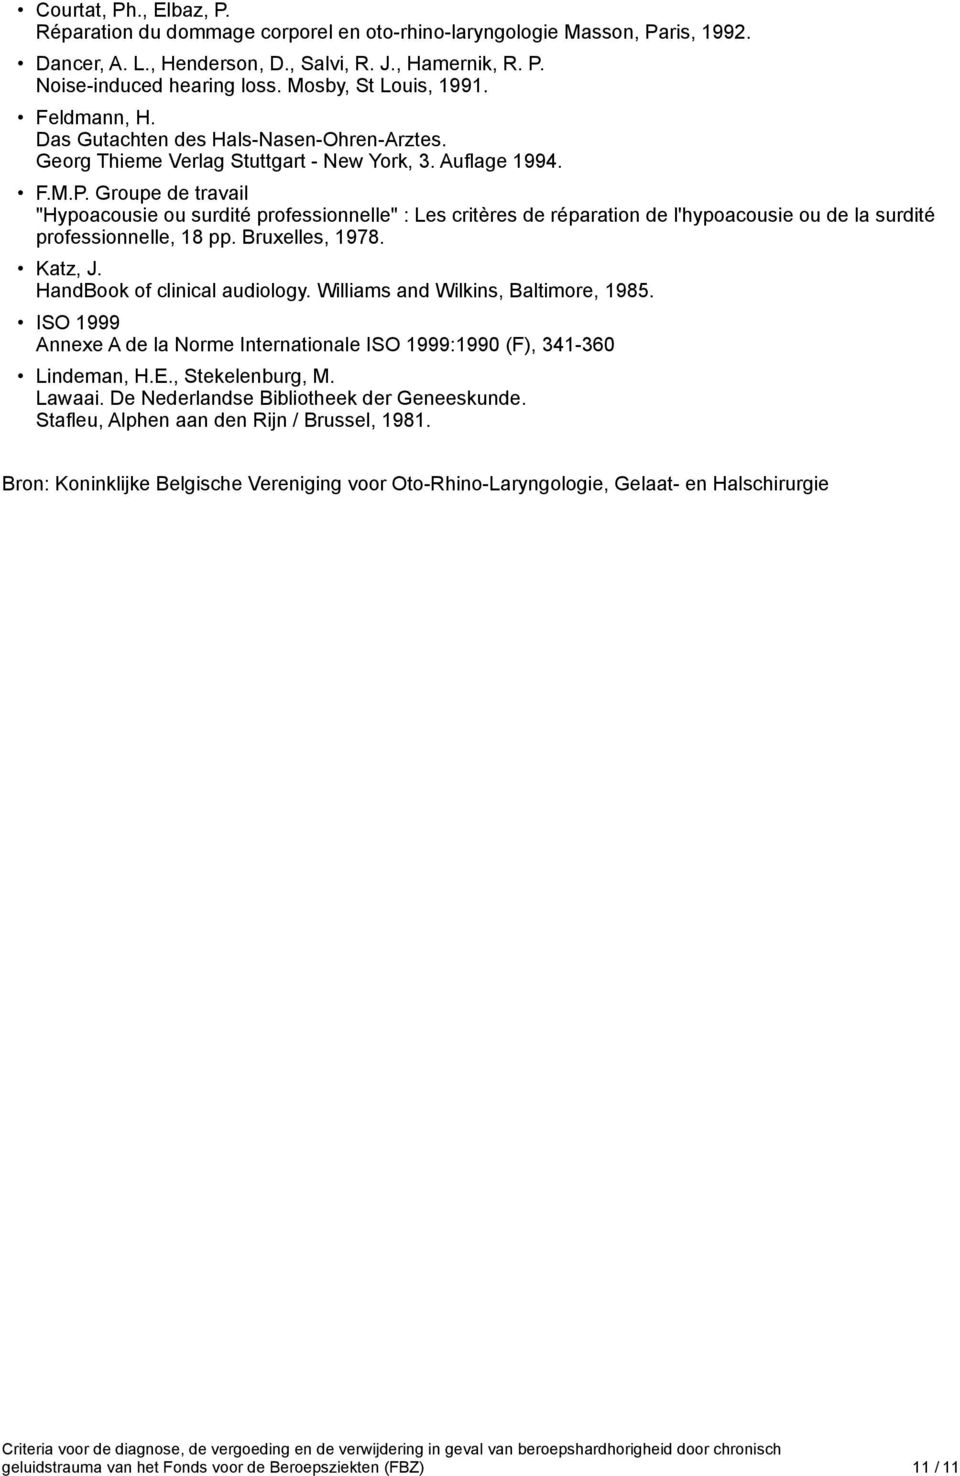 Groupe de travail "Hypoacousie ou surdité professionnelle" : Les critères de réparation de l'hypoacousie ou de la surdité professionnelle, 18 pp. Bruxelles, 1978. Katz, J.